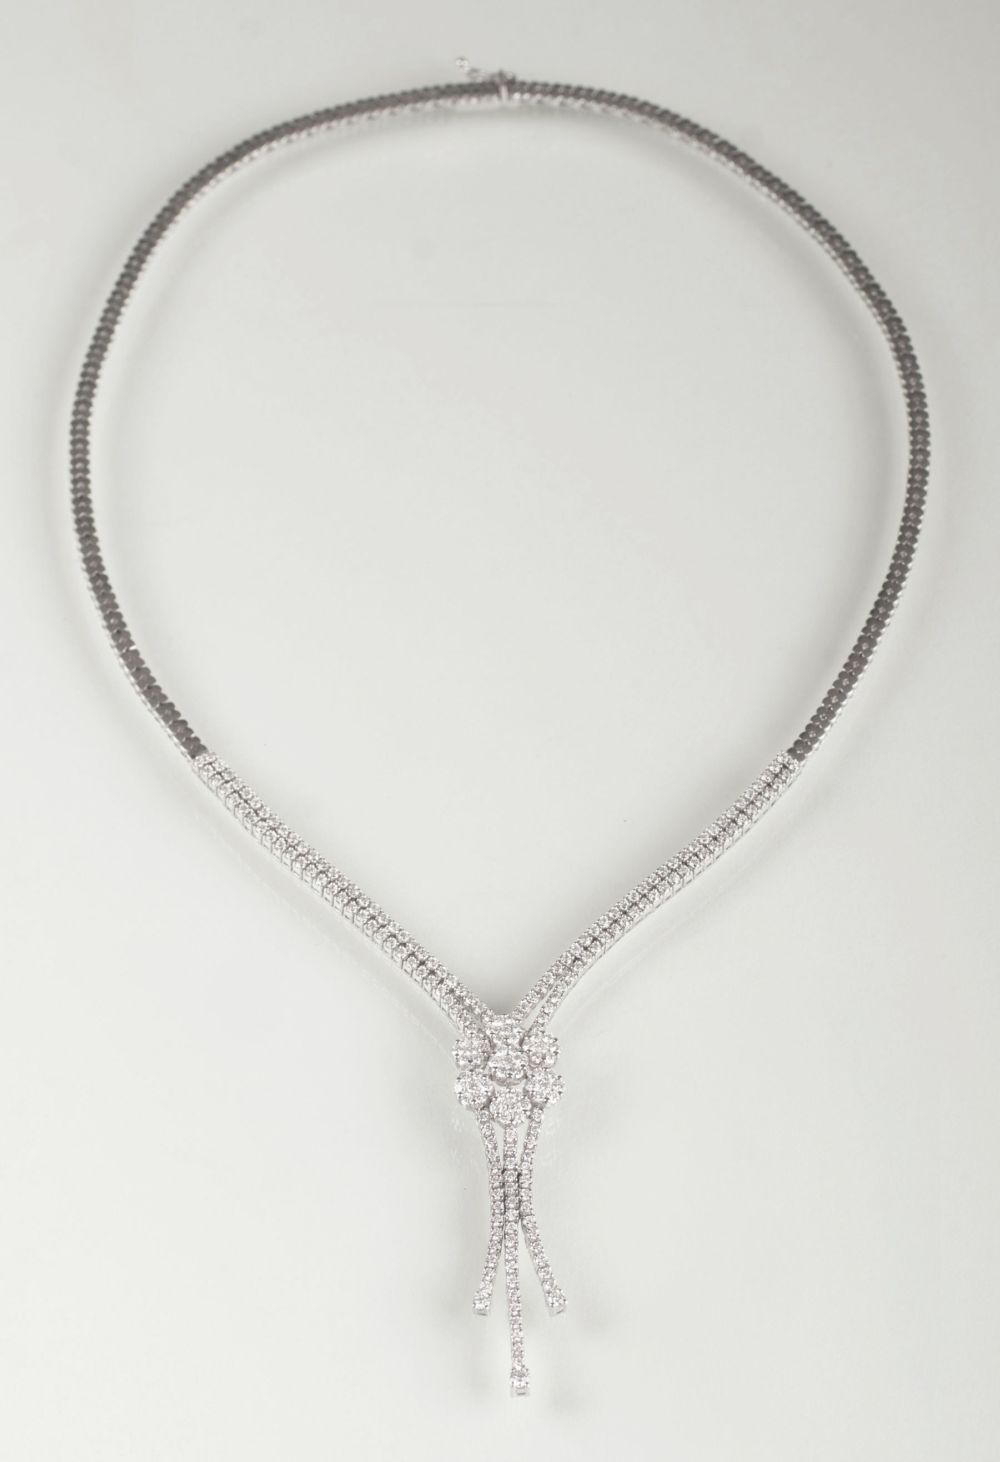 A Diamond Necklace - image 2